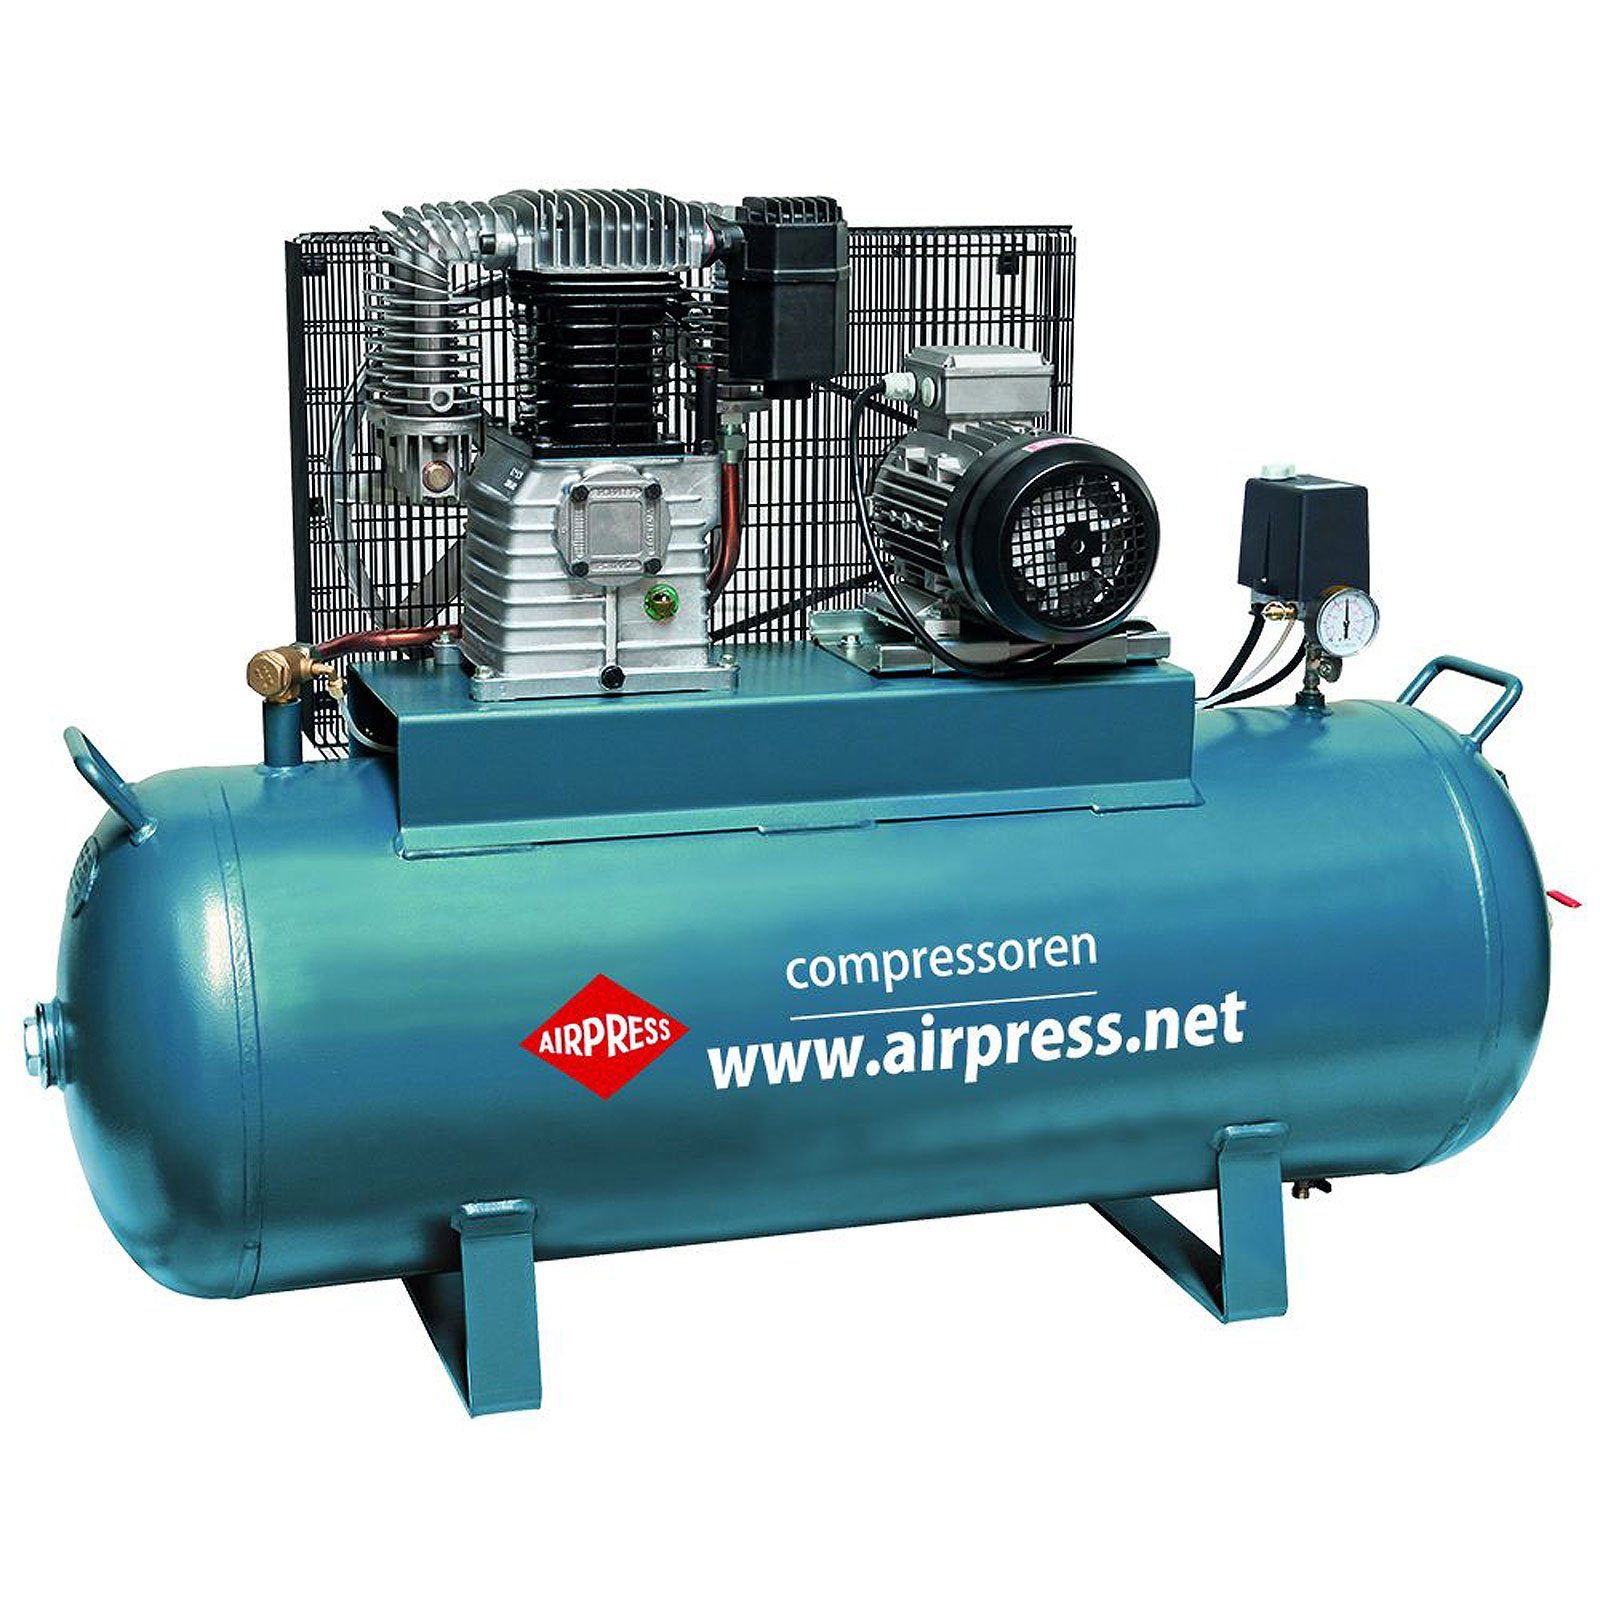 Airpress Kompressor Kompressor 4 PS 200 Liter 15 bar Typ K200-600 36500-N, max. 14 bar, 200 l, 1 Stück